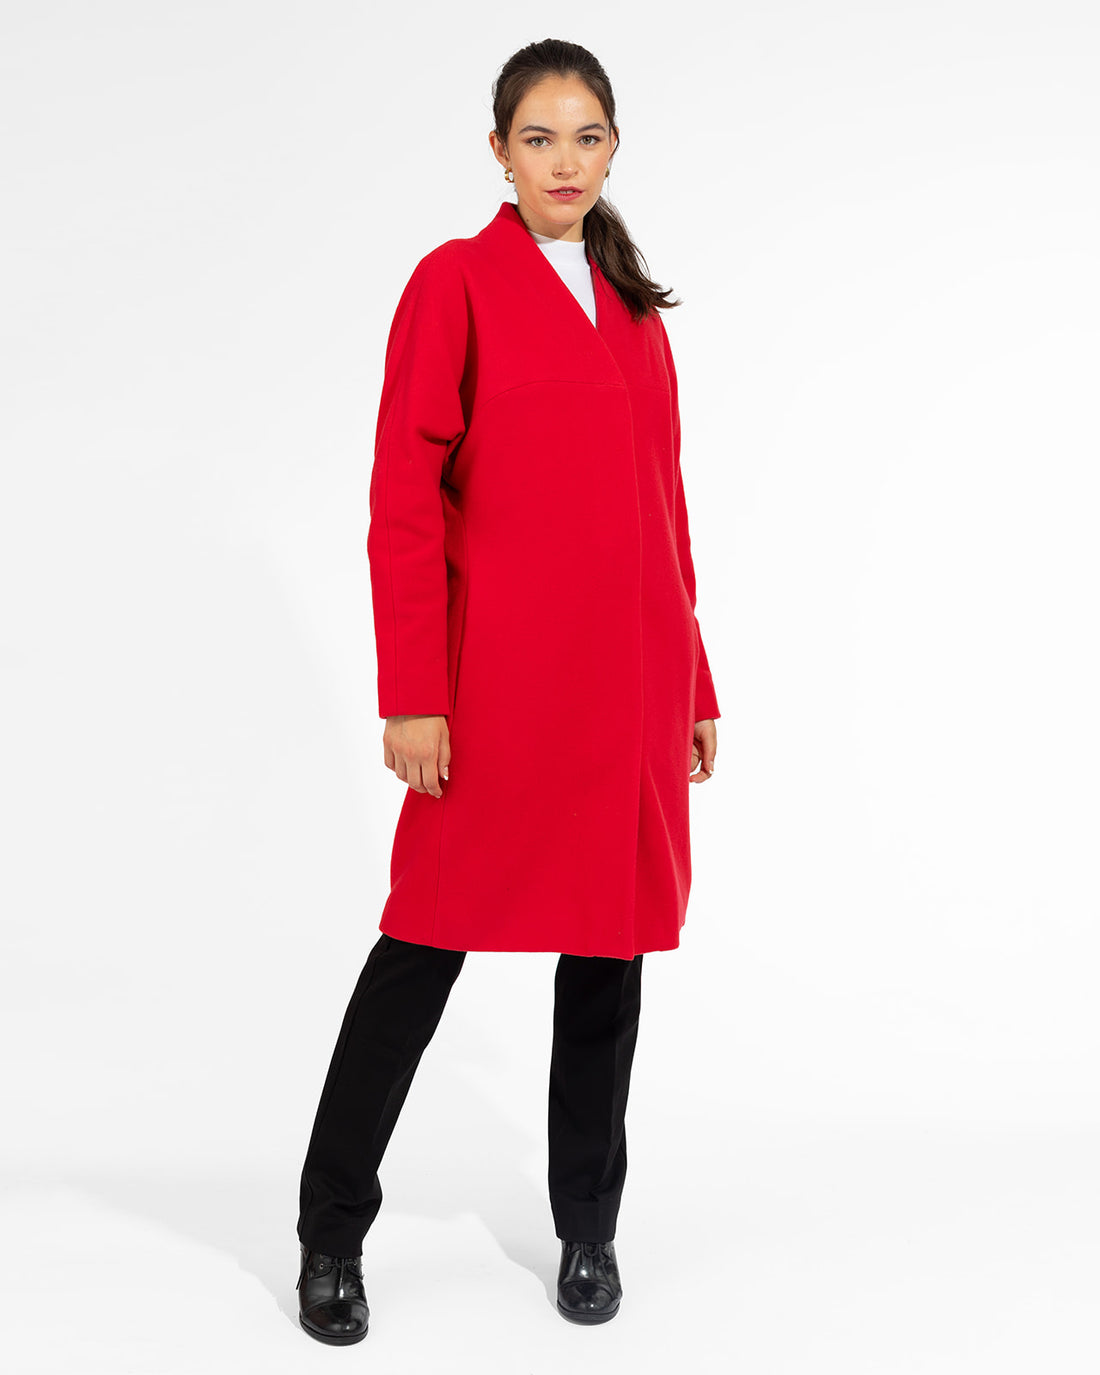 Red Cardigan Coat